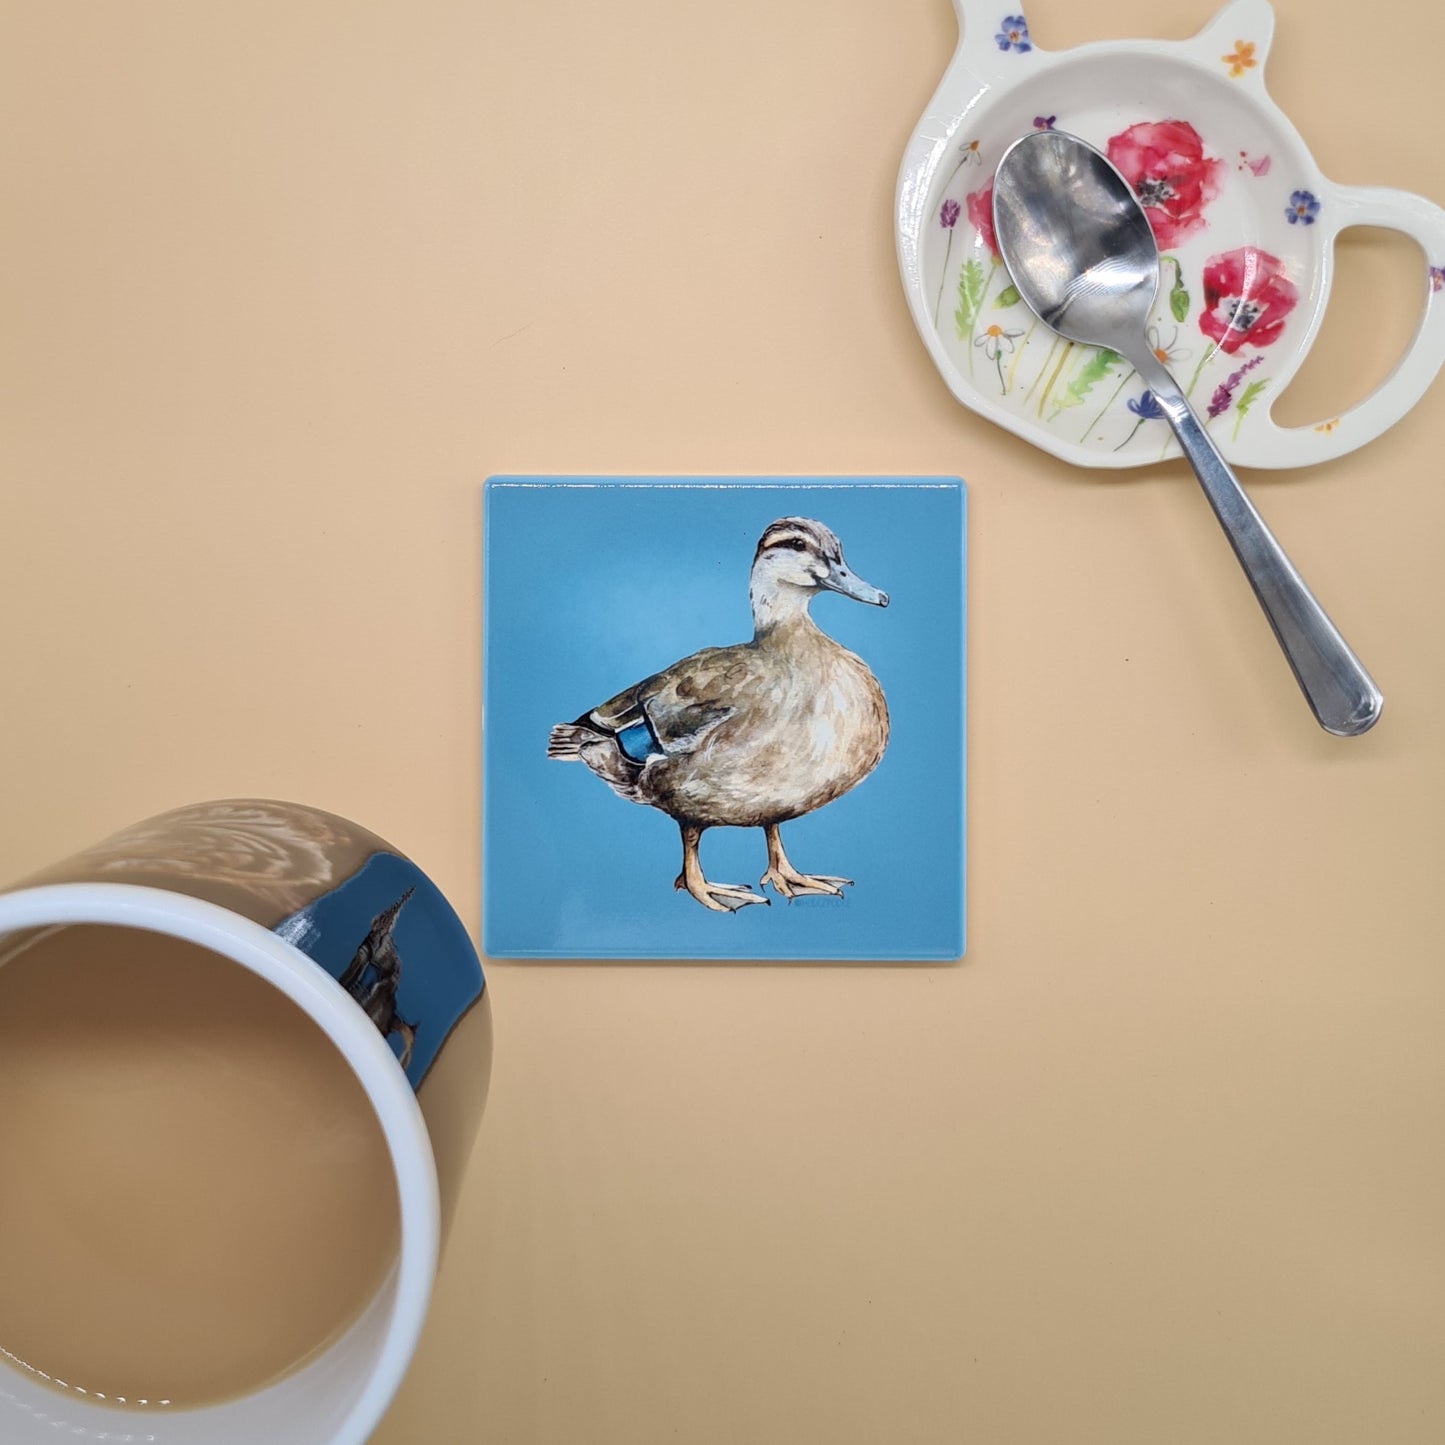 Beautiful Female Mallard Duck Art Ceramic Coaster featuring 'Queenie' Print